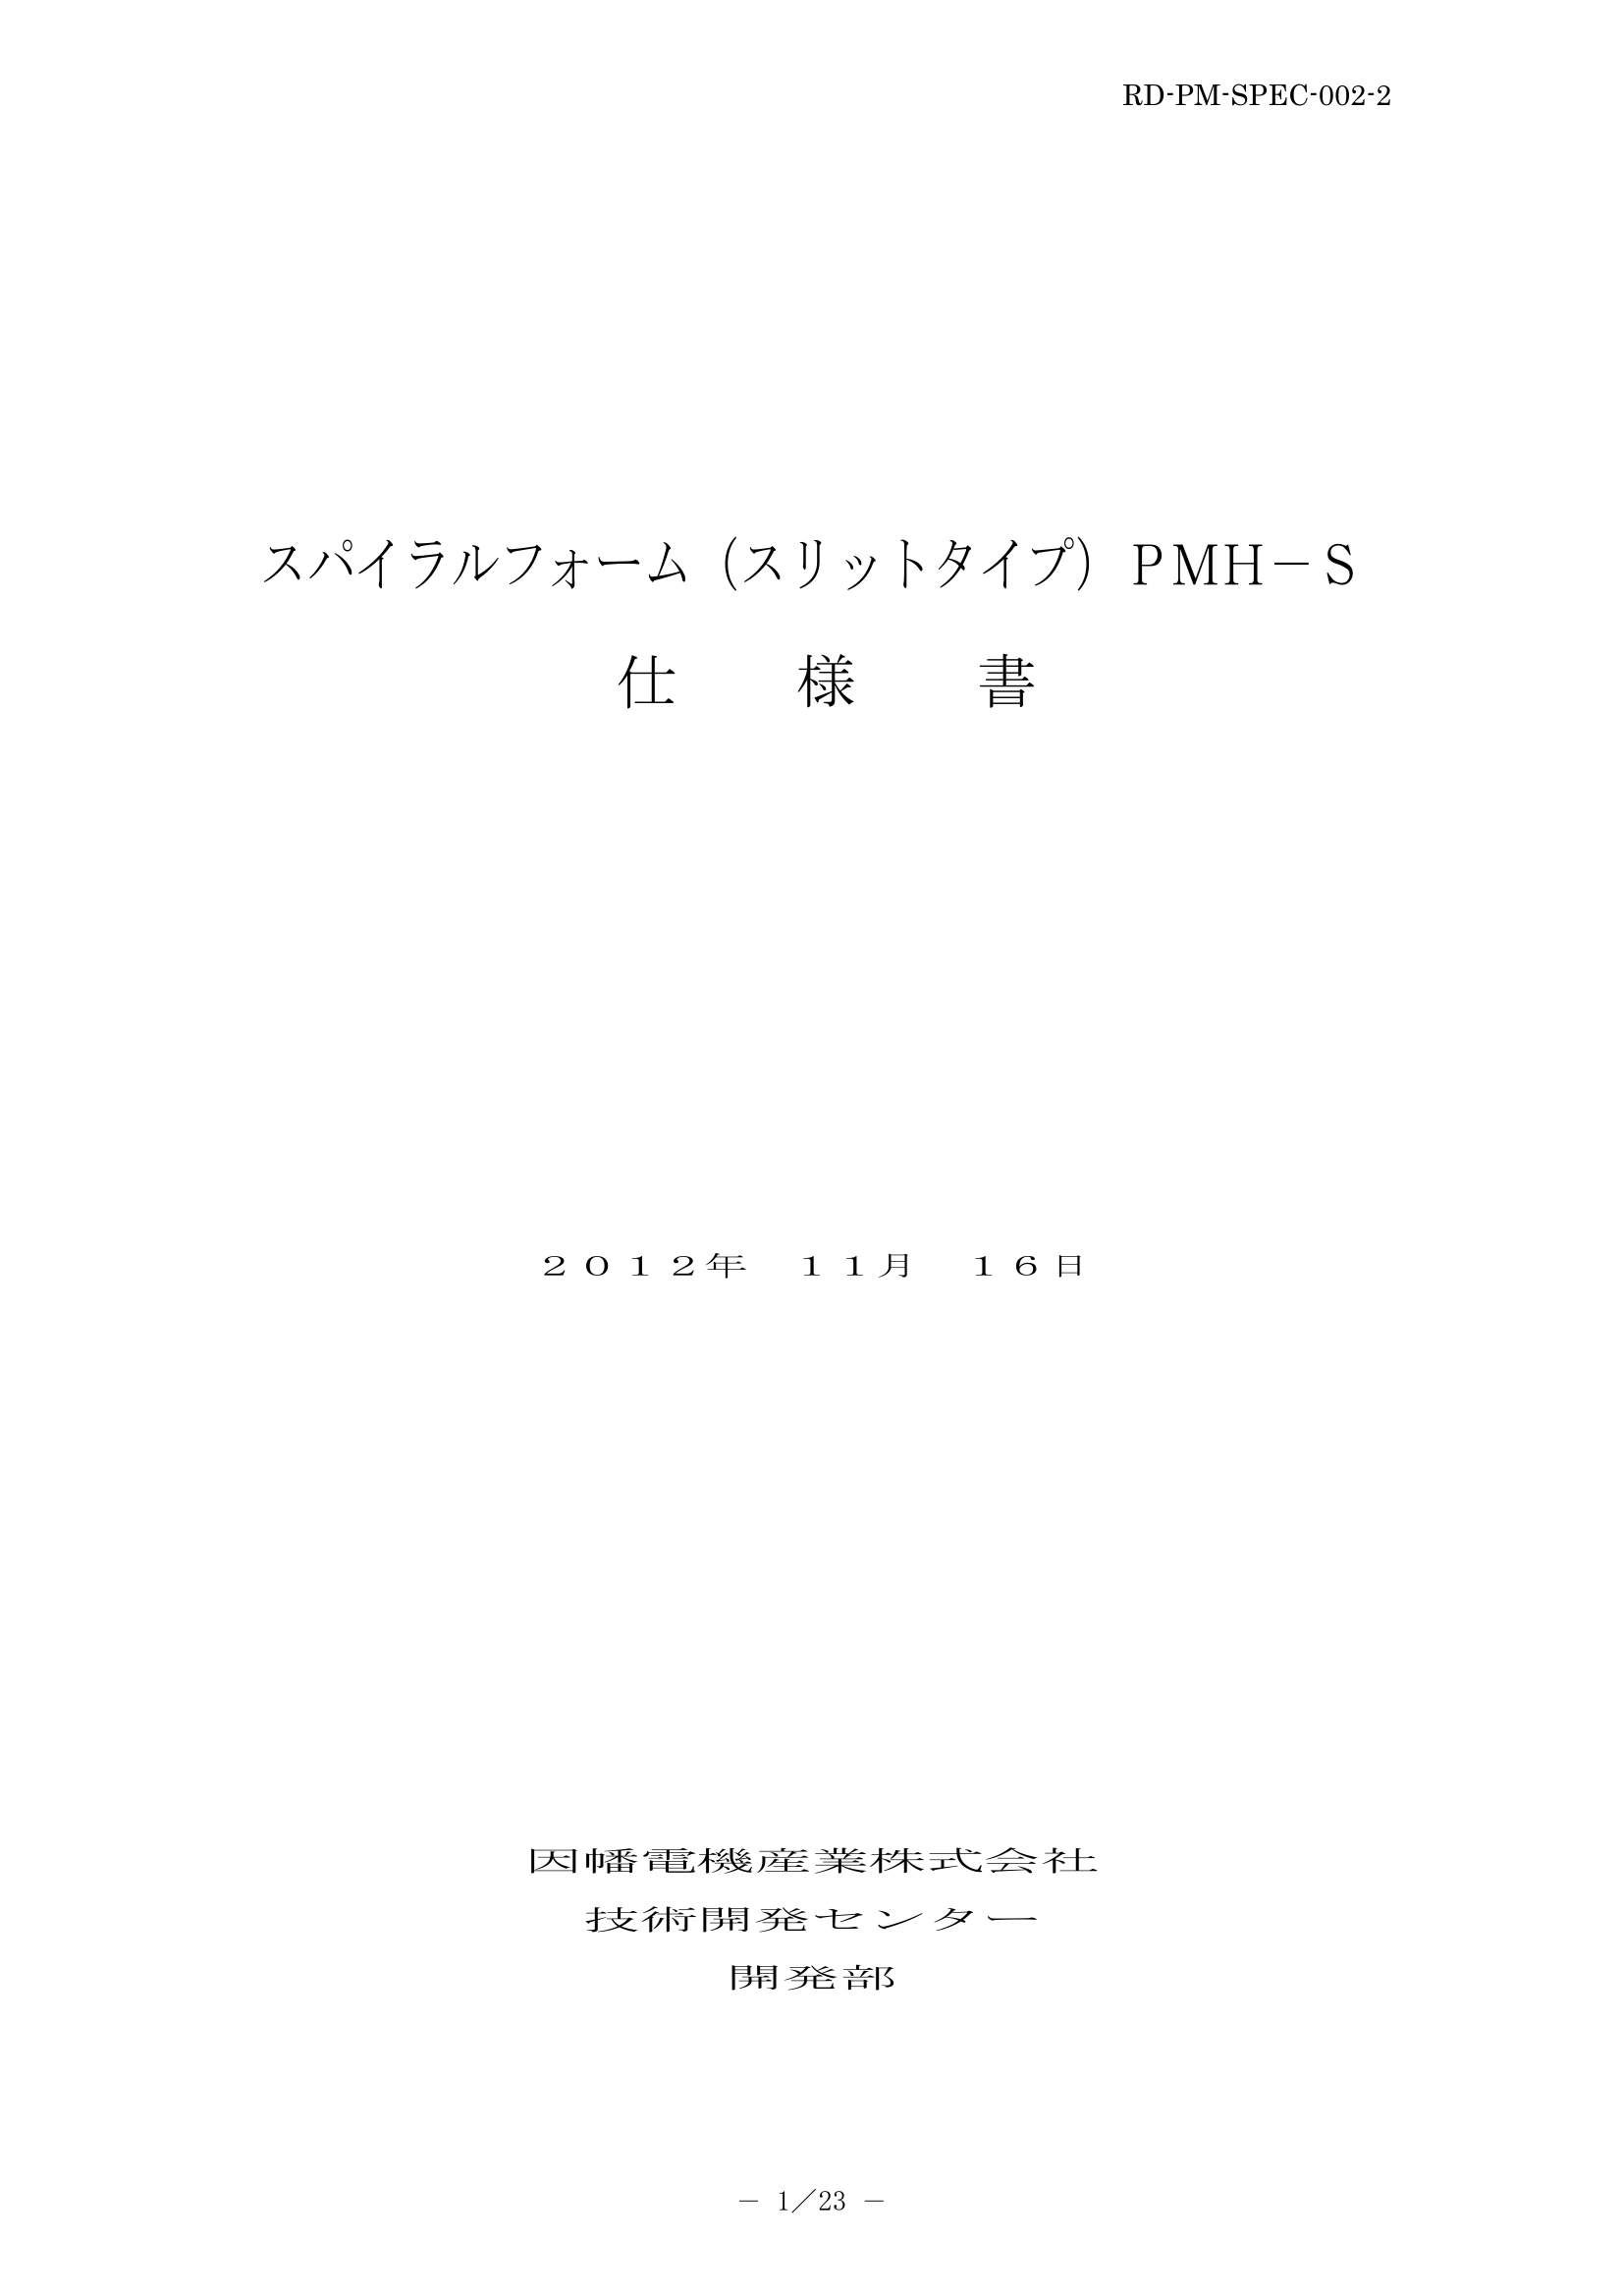 PMH-S_仕様書_20121119.pdf